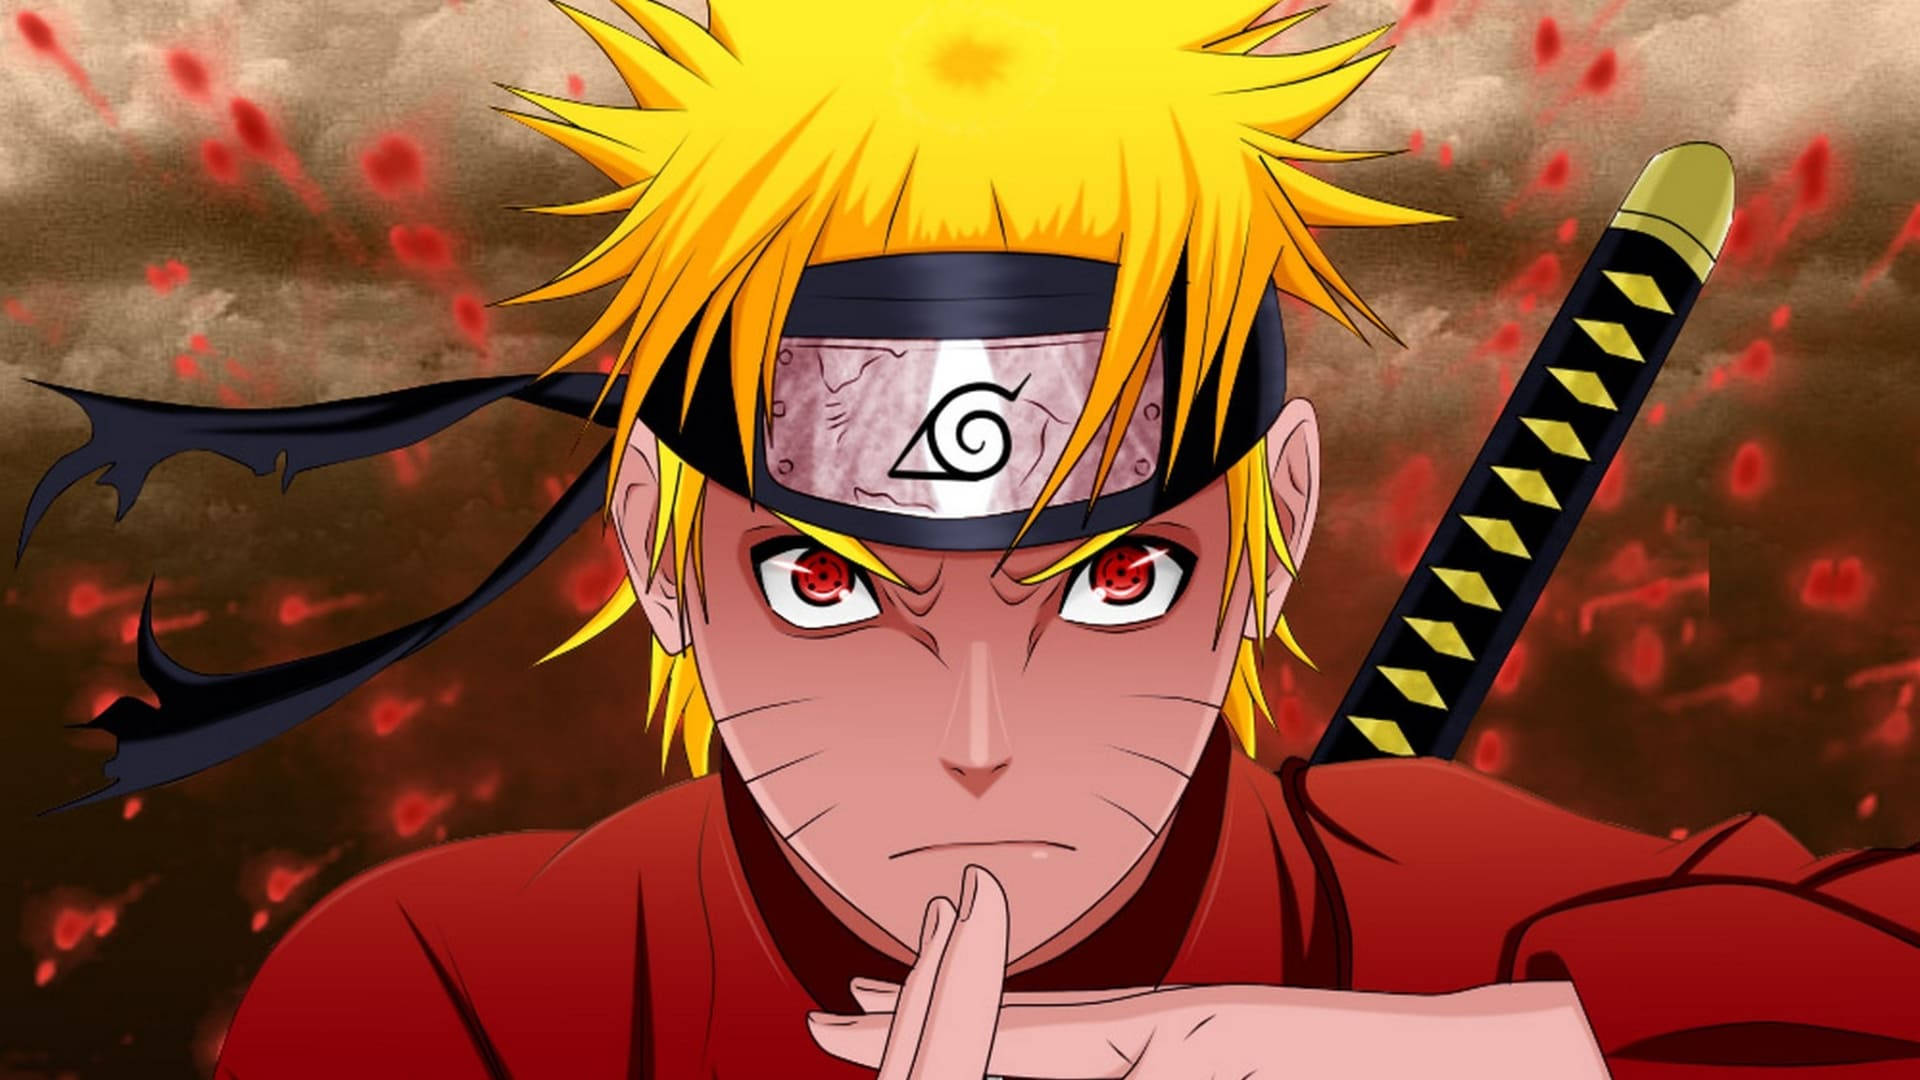 Sad Naruto Jutsu Hand Sign